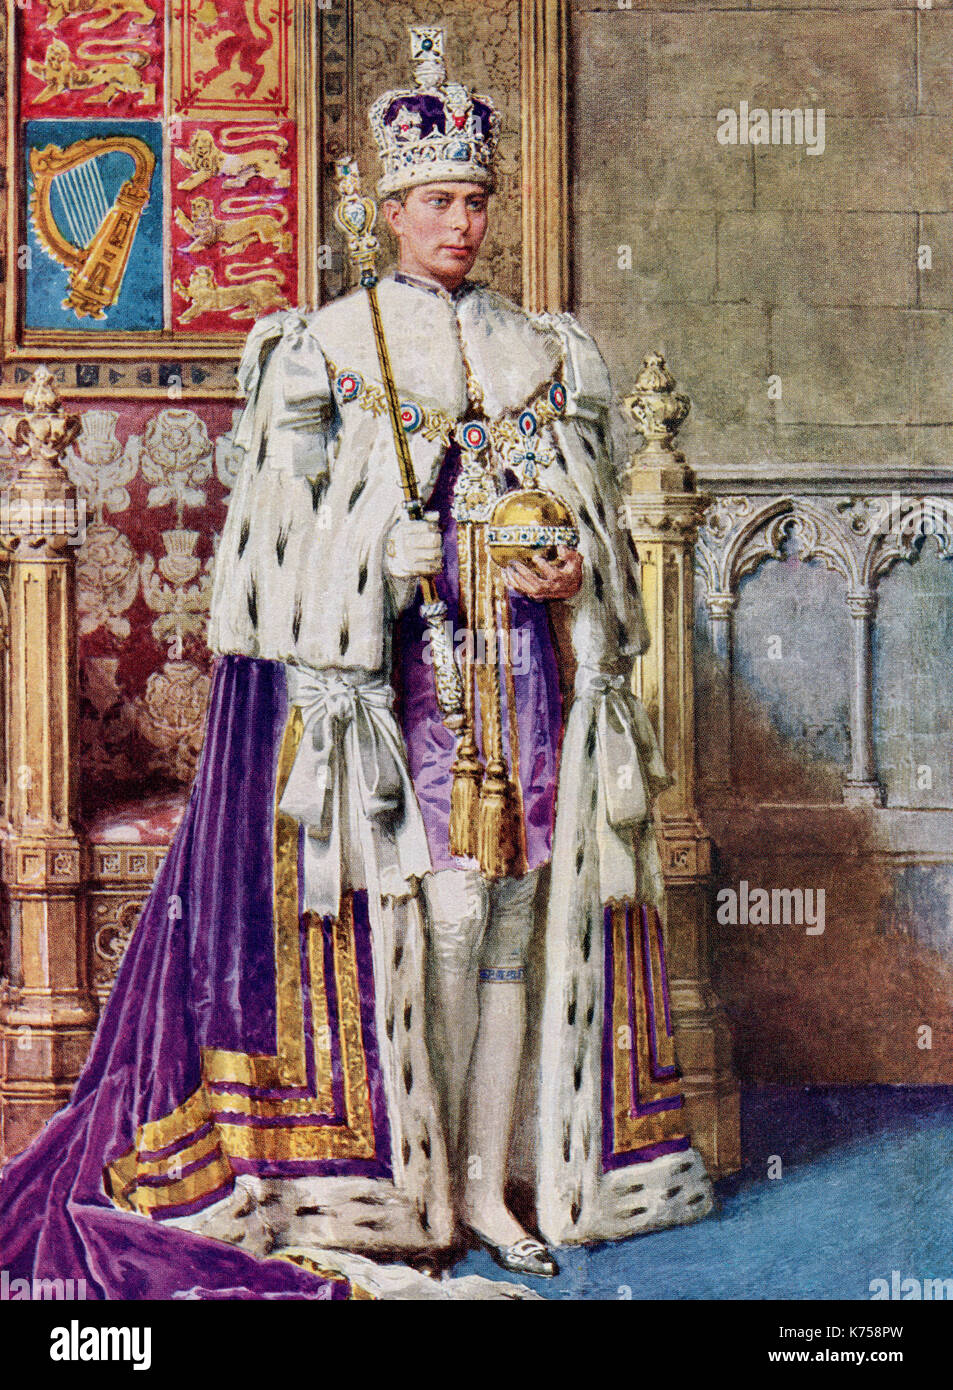 George VI im Coronation Roben, 1936. George VI., 1895 - 1952. König des Vereinigten Königreichs und der Dominions des British Commonwealth. Von der Krönung von König Georg VI. und Königin Elizabeth, veröffentlicht 1937. Stockfoto